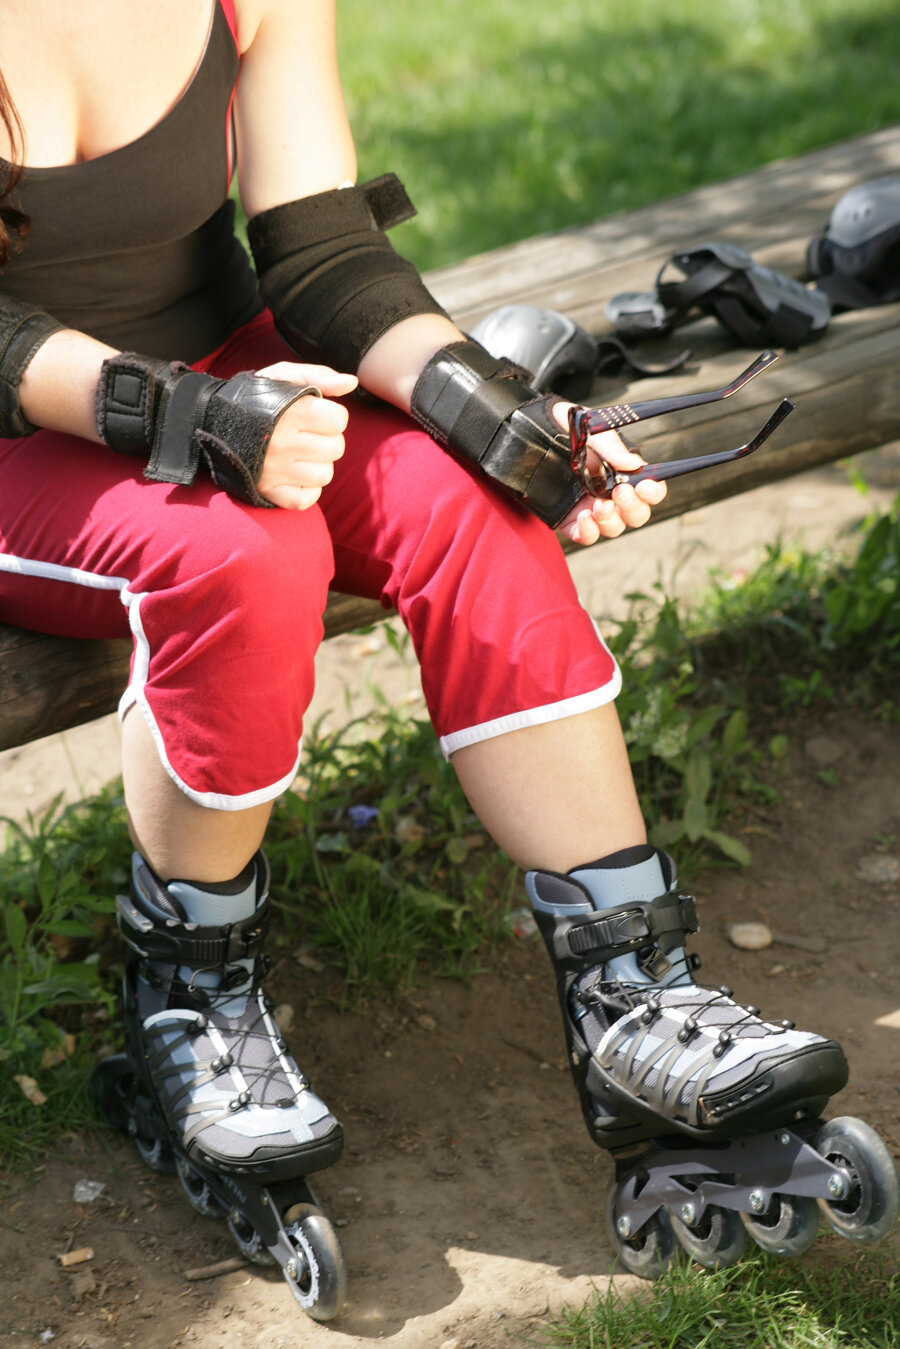 Verletzungen beim Inline-Skaten könnten mindestens um die Hälfte reduziert werden, wenn eine komplette Schutzausrüstung getragen wird.